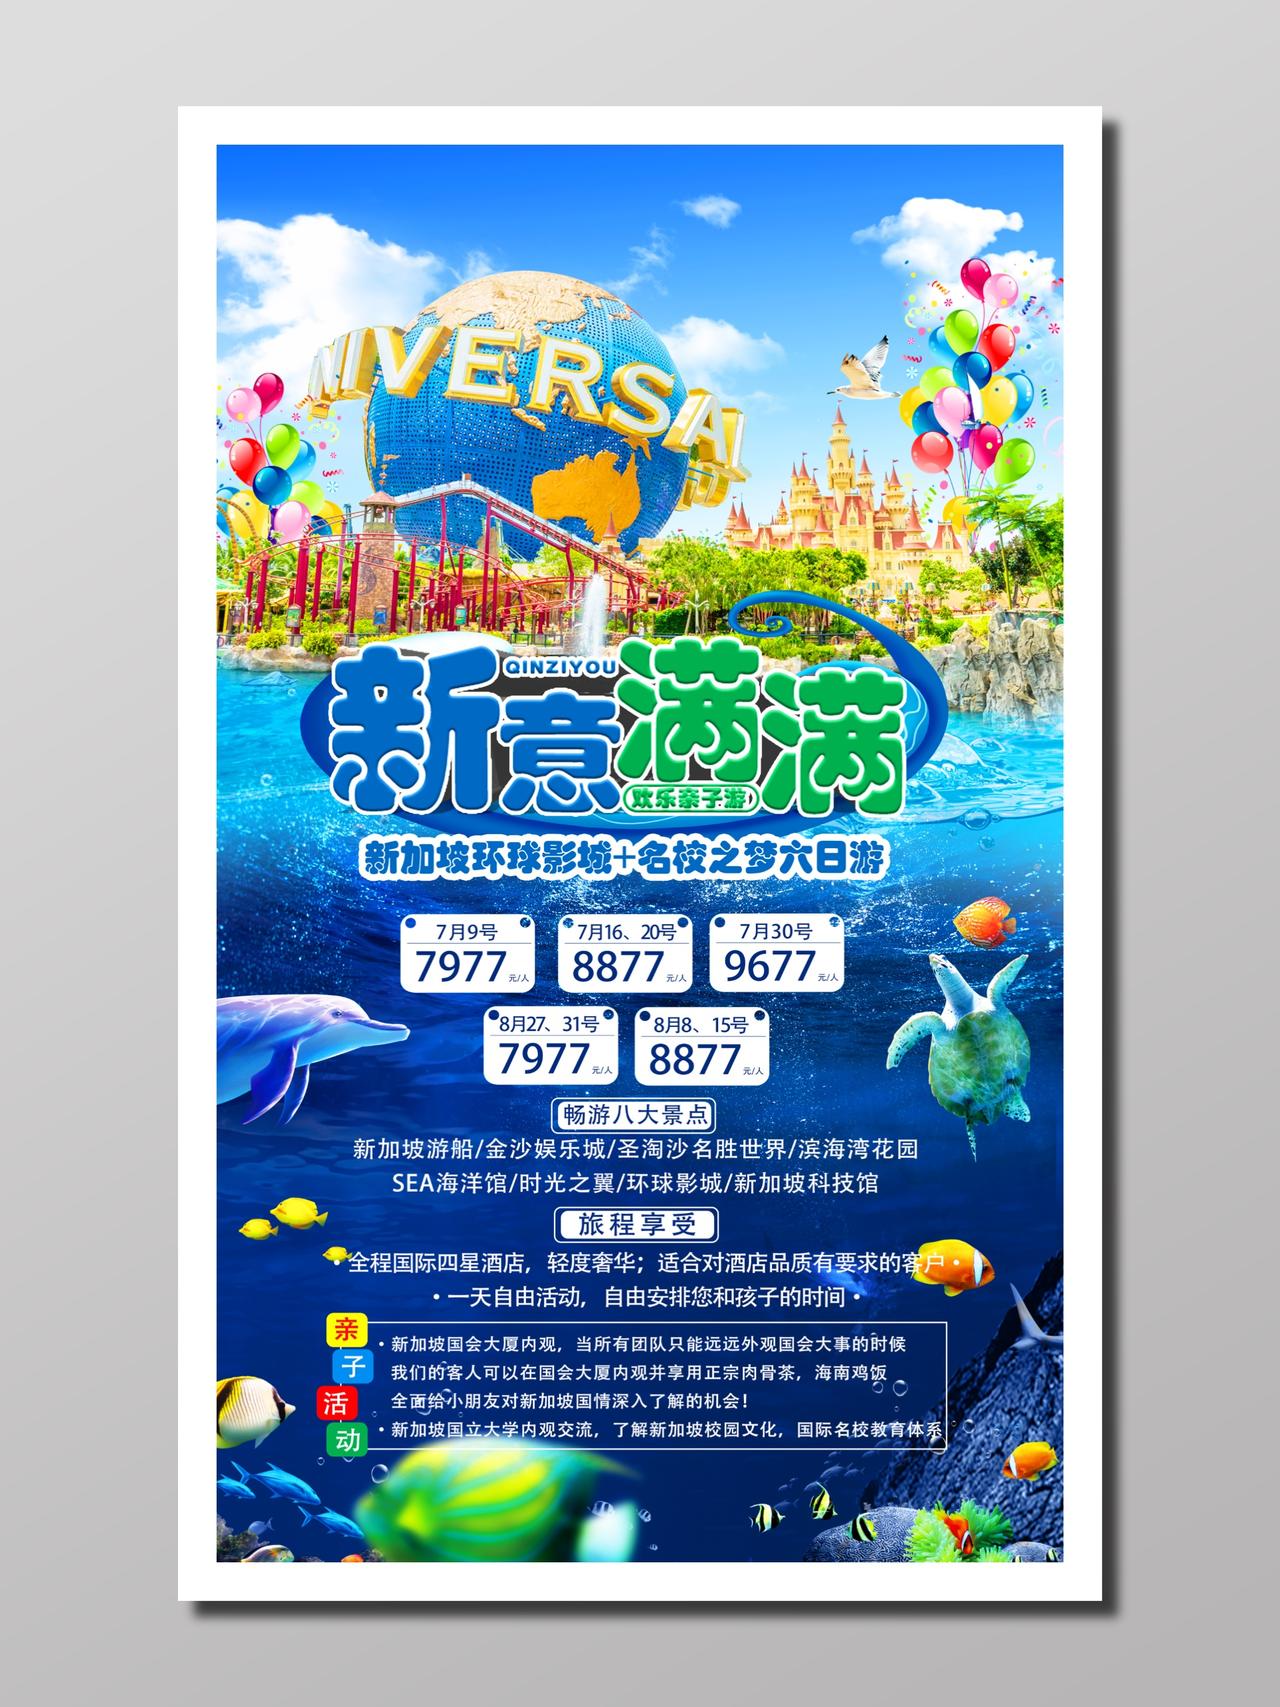 旅游新加坡旅行蓝色梦幻欢乐行程安排游学亲子活动海报设计